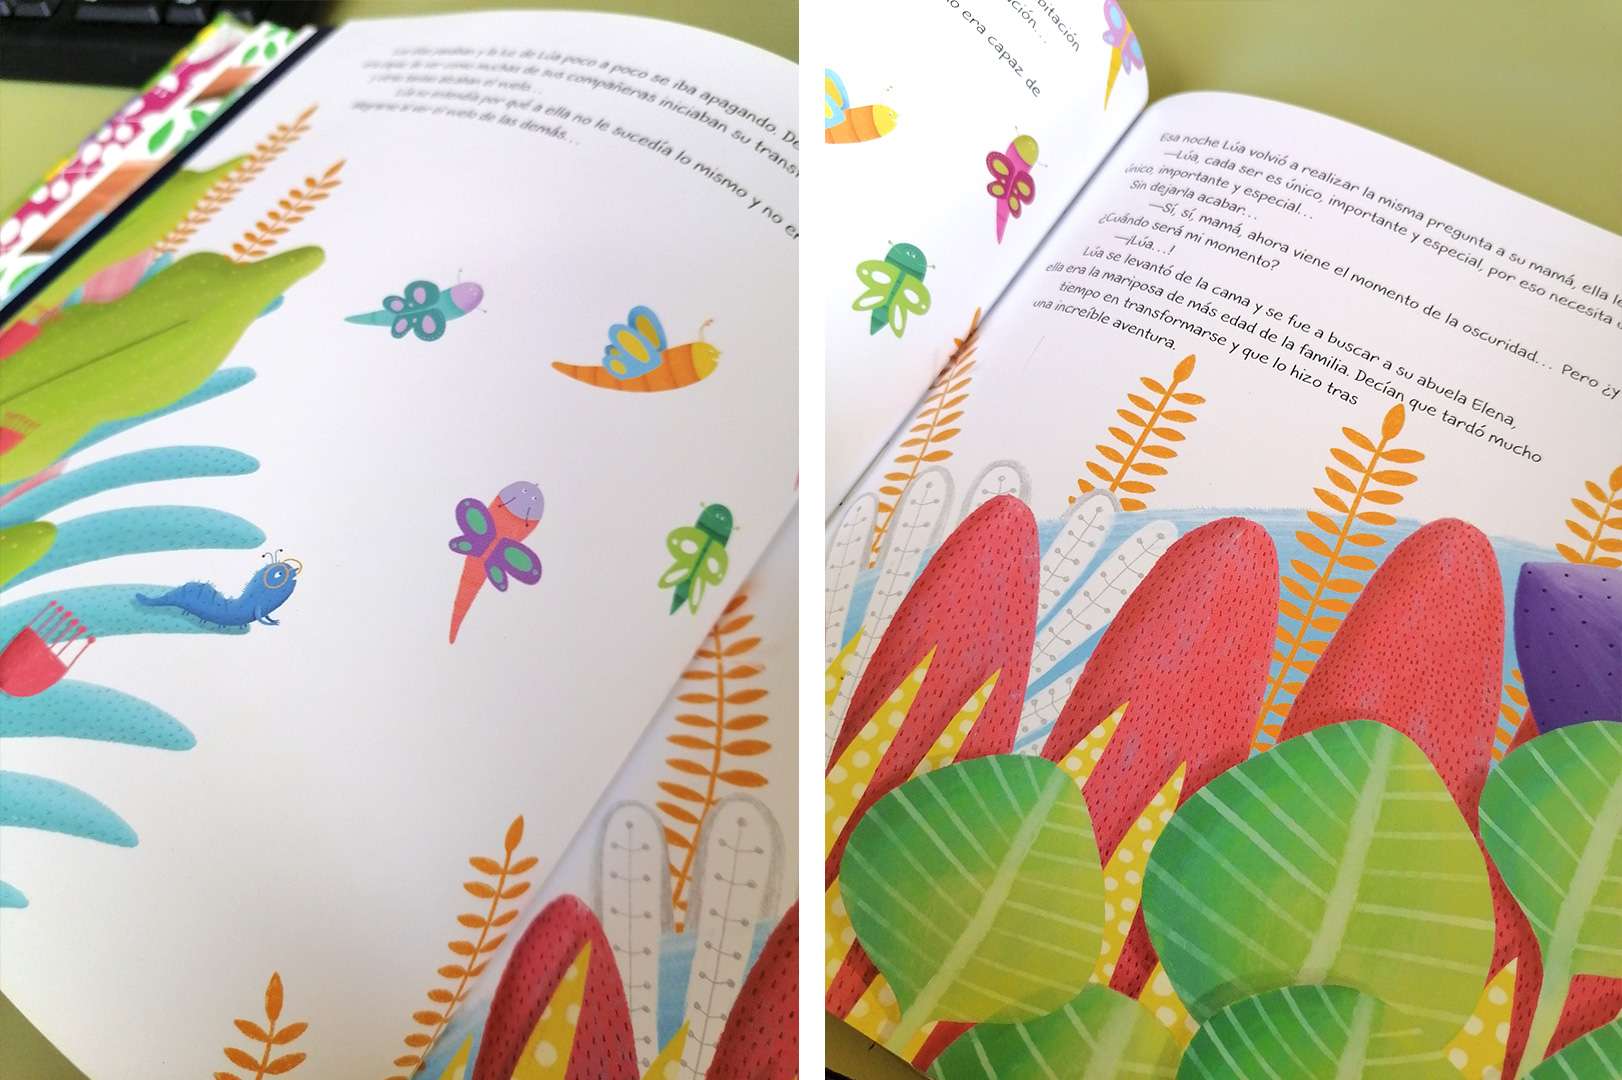 Revisión del libro Con alas de mariposa autor: Irene Gómez Marín